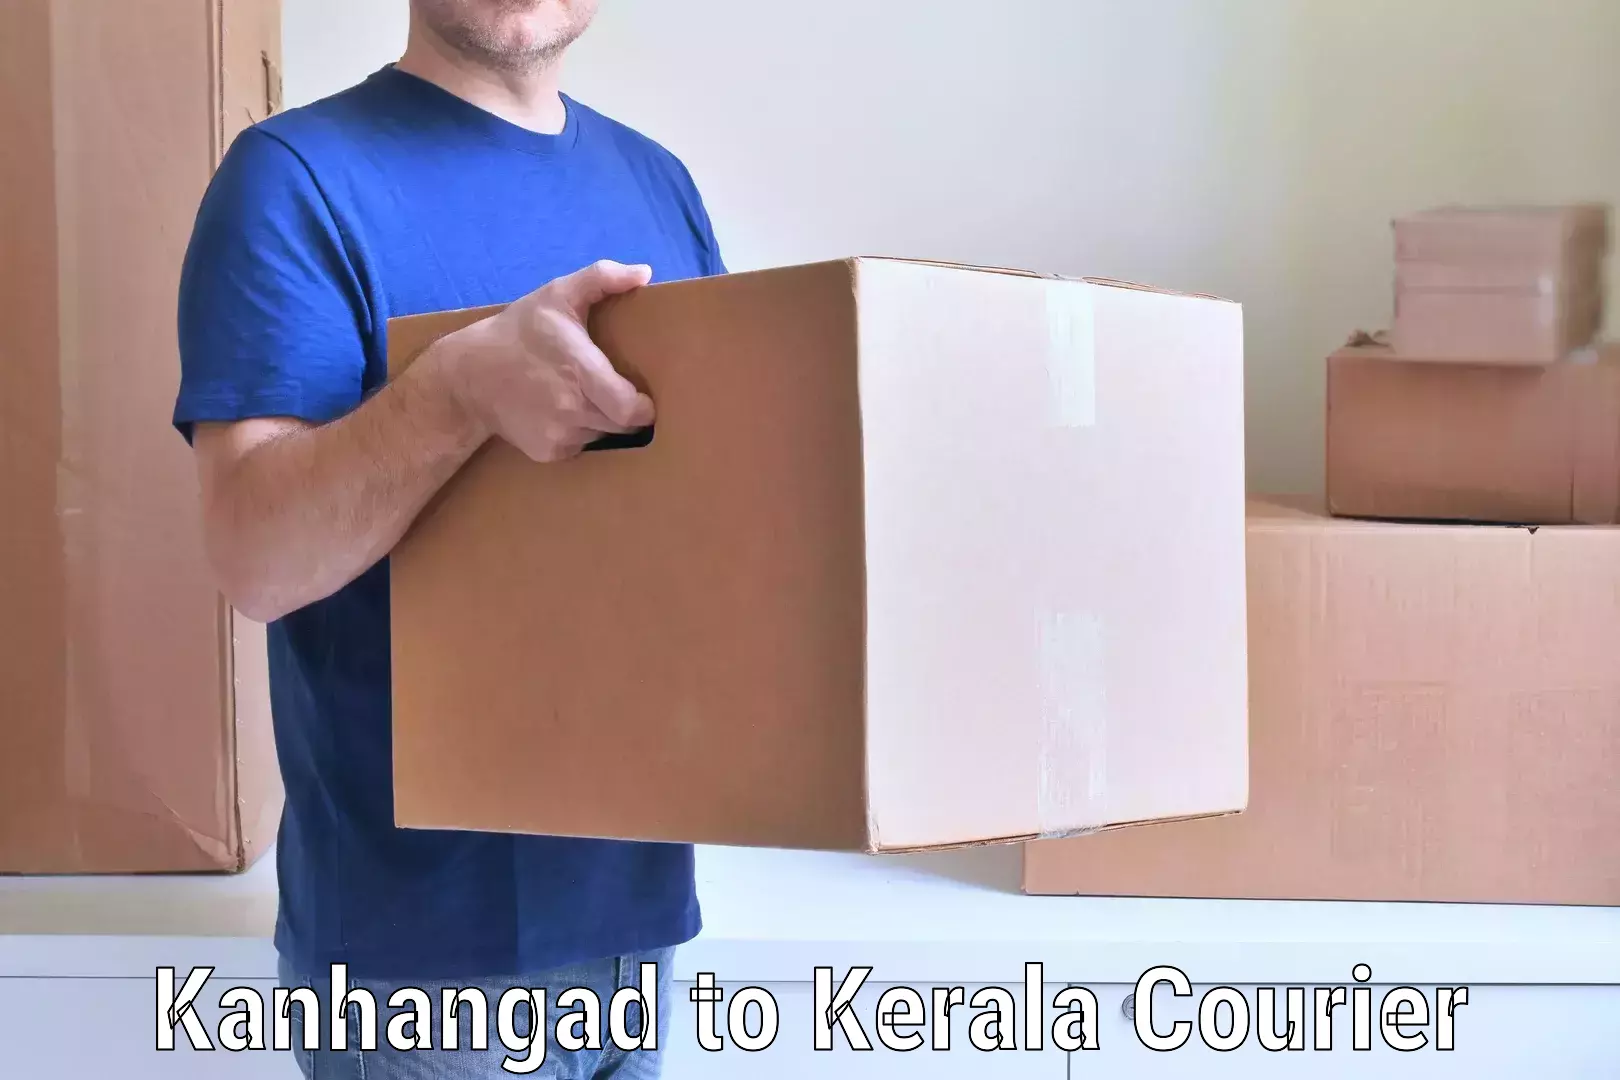 Professional moving company Kanhangad to Muvattupuzha